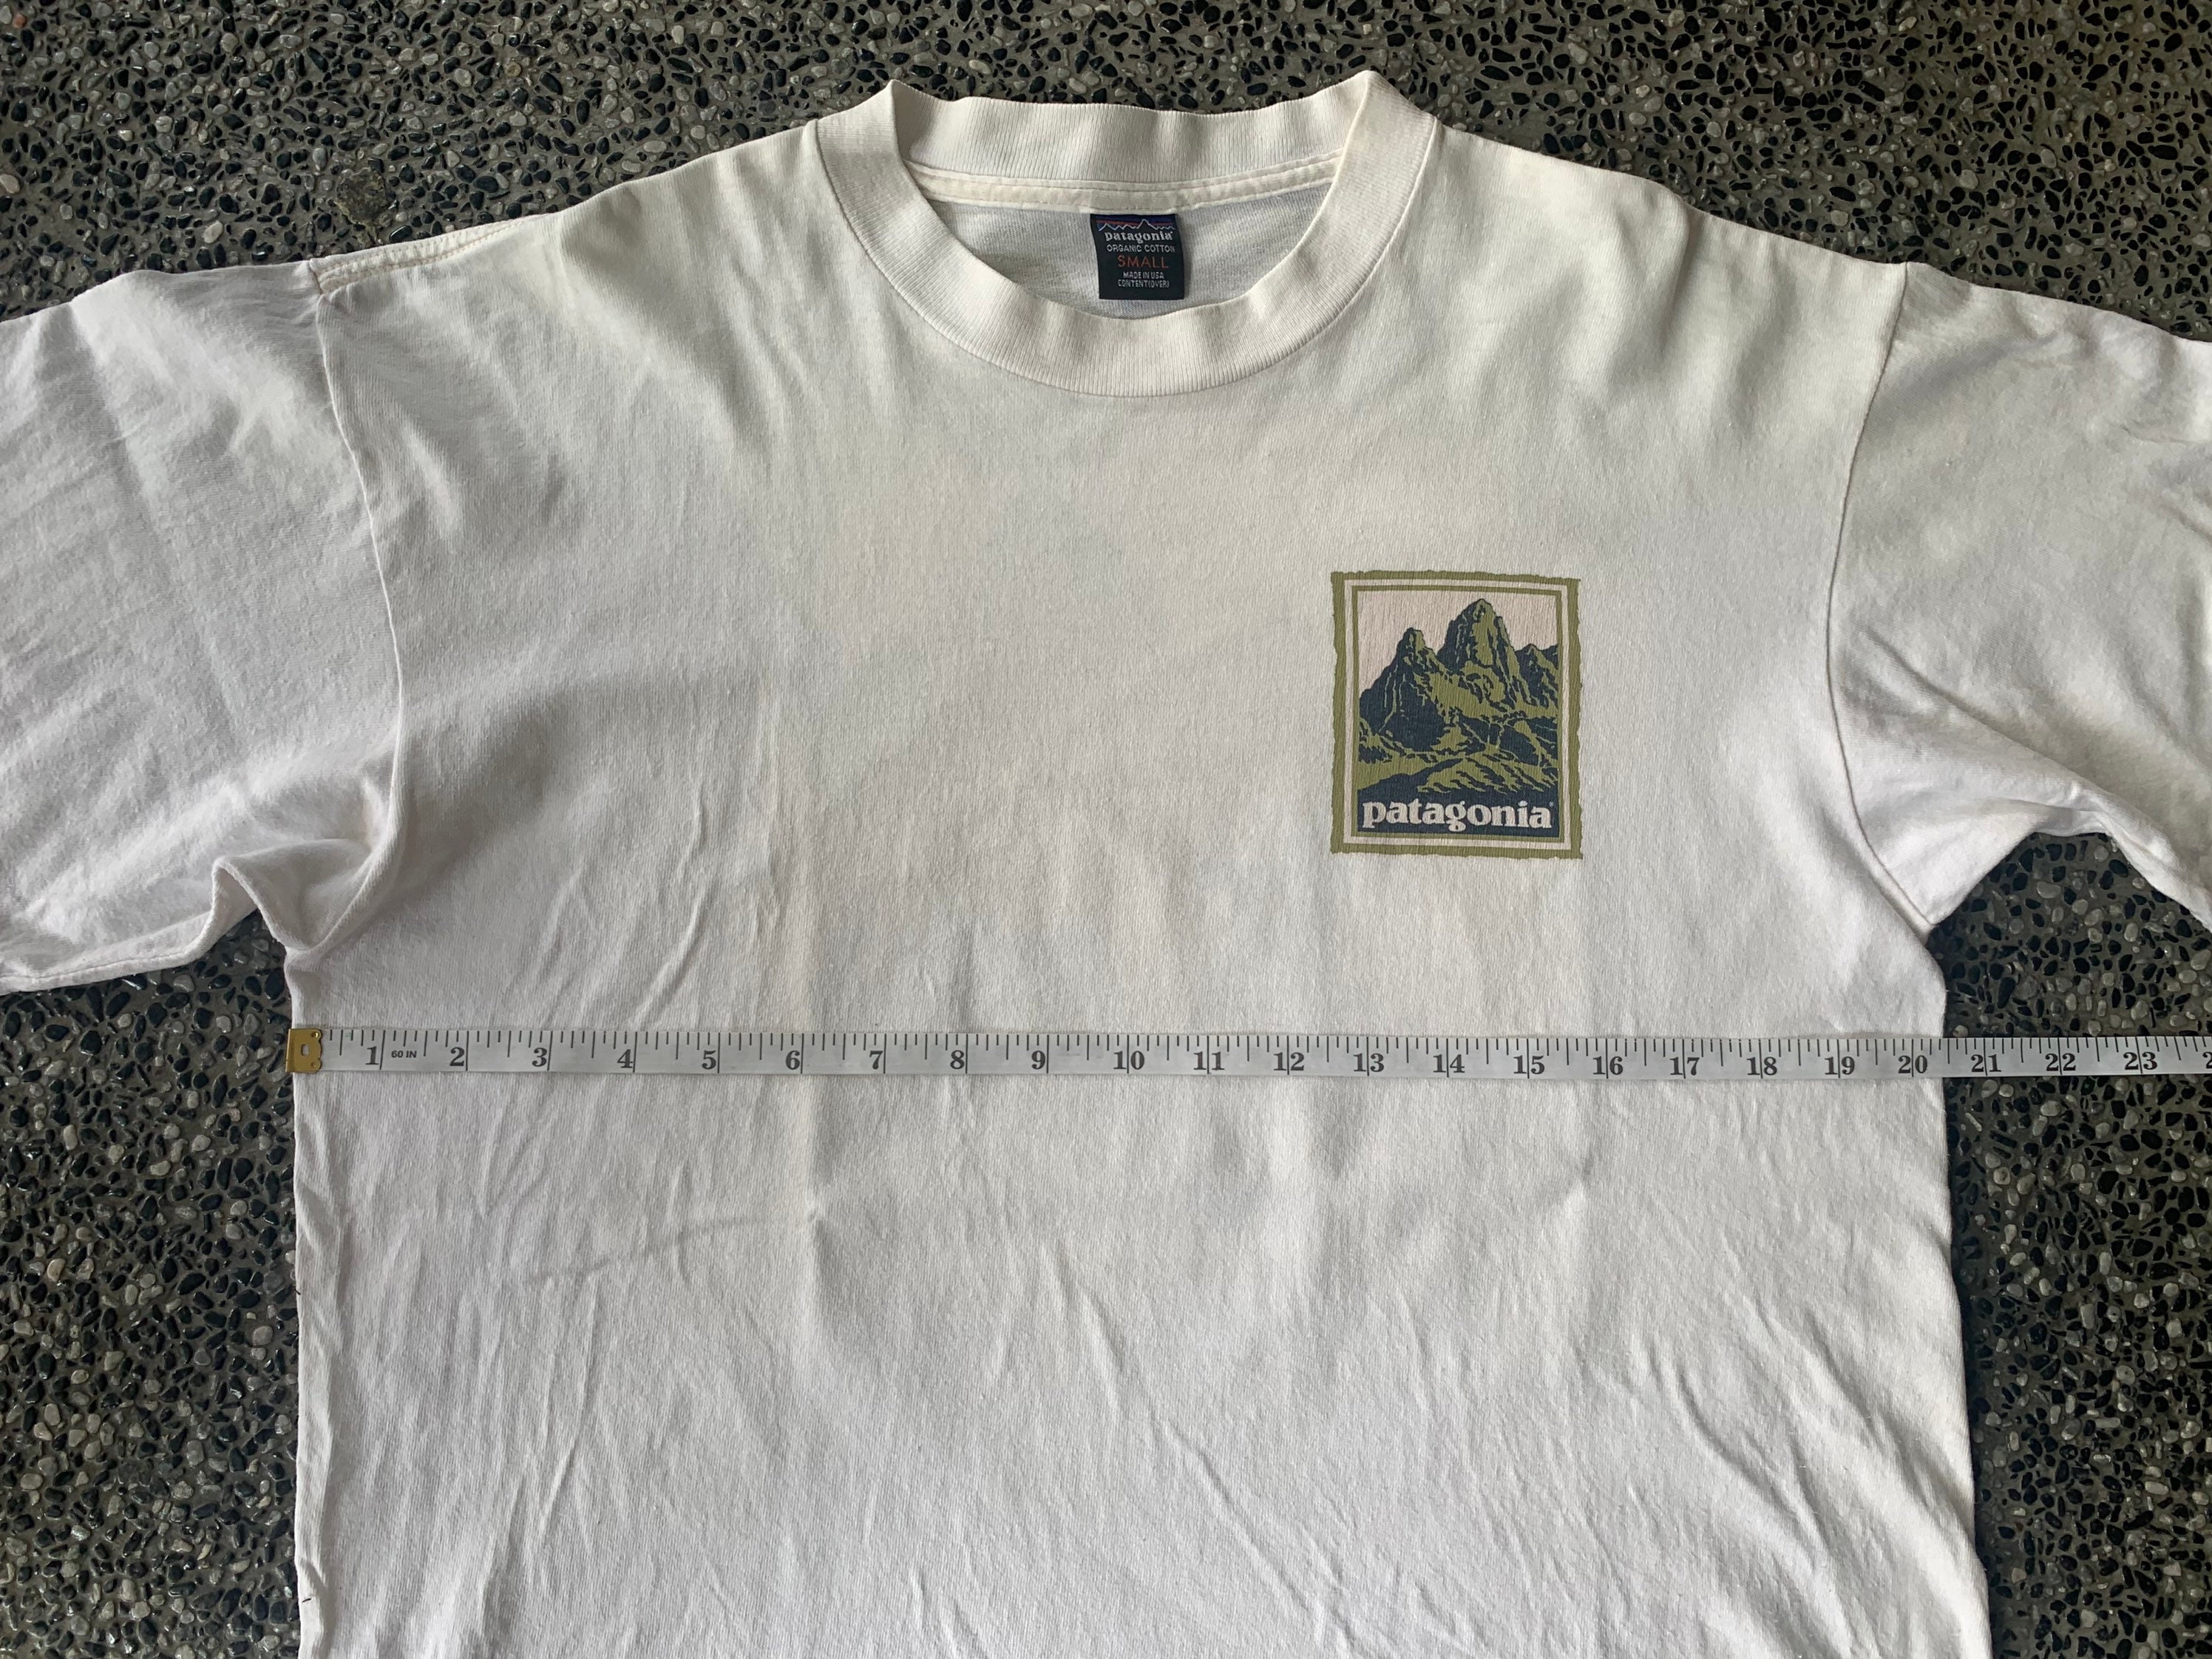 Vintage Patagonia T Shirt - Etsy UK